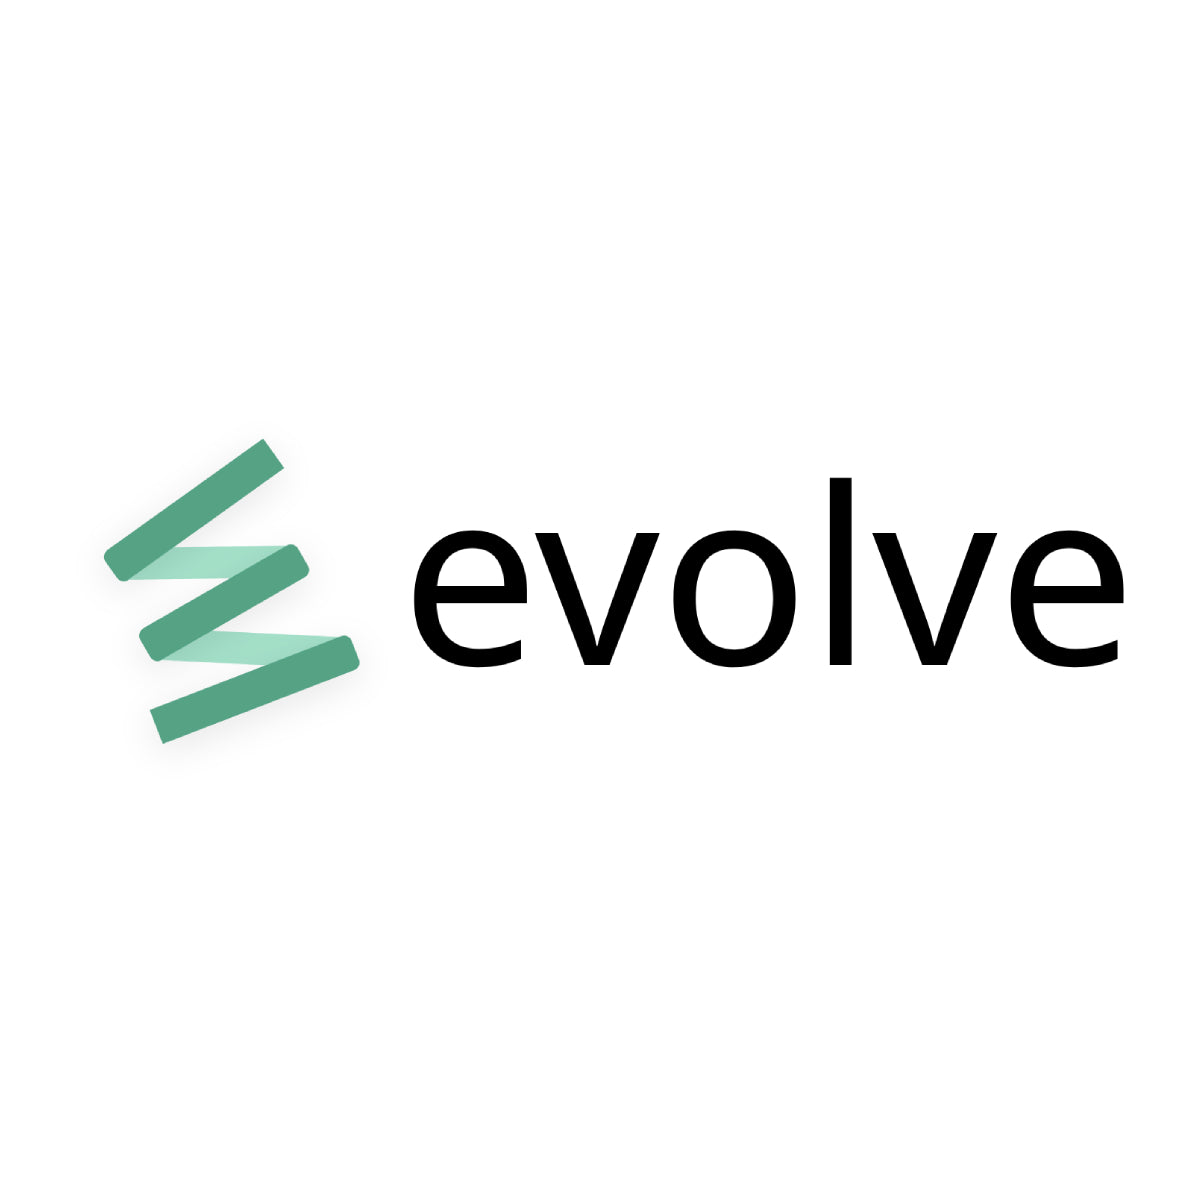 Evolve ‑ Rewards and Loyalty - Loyalty Platform | Shopify App Store